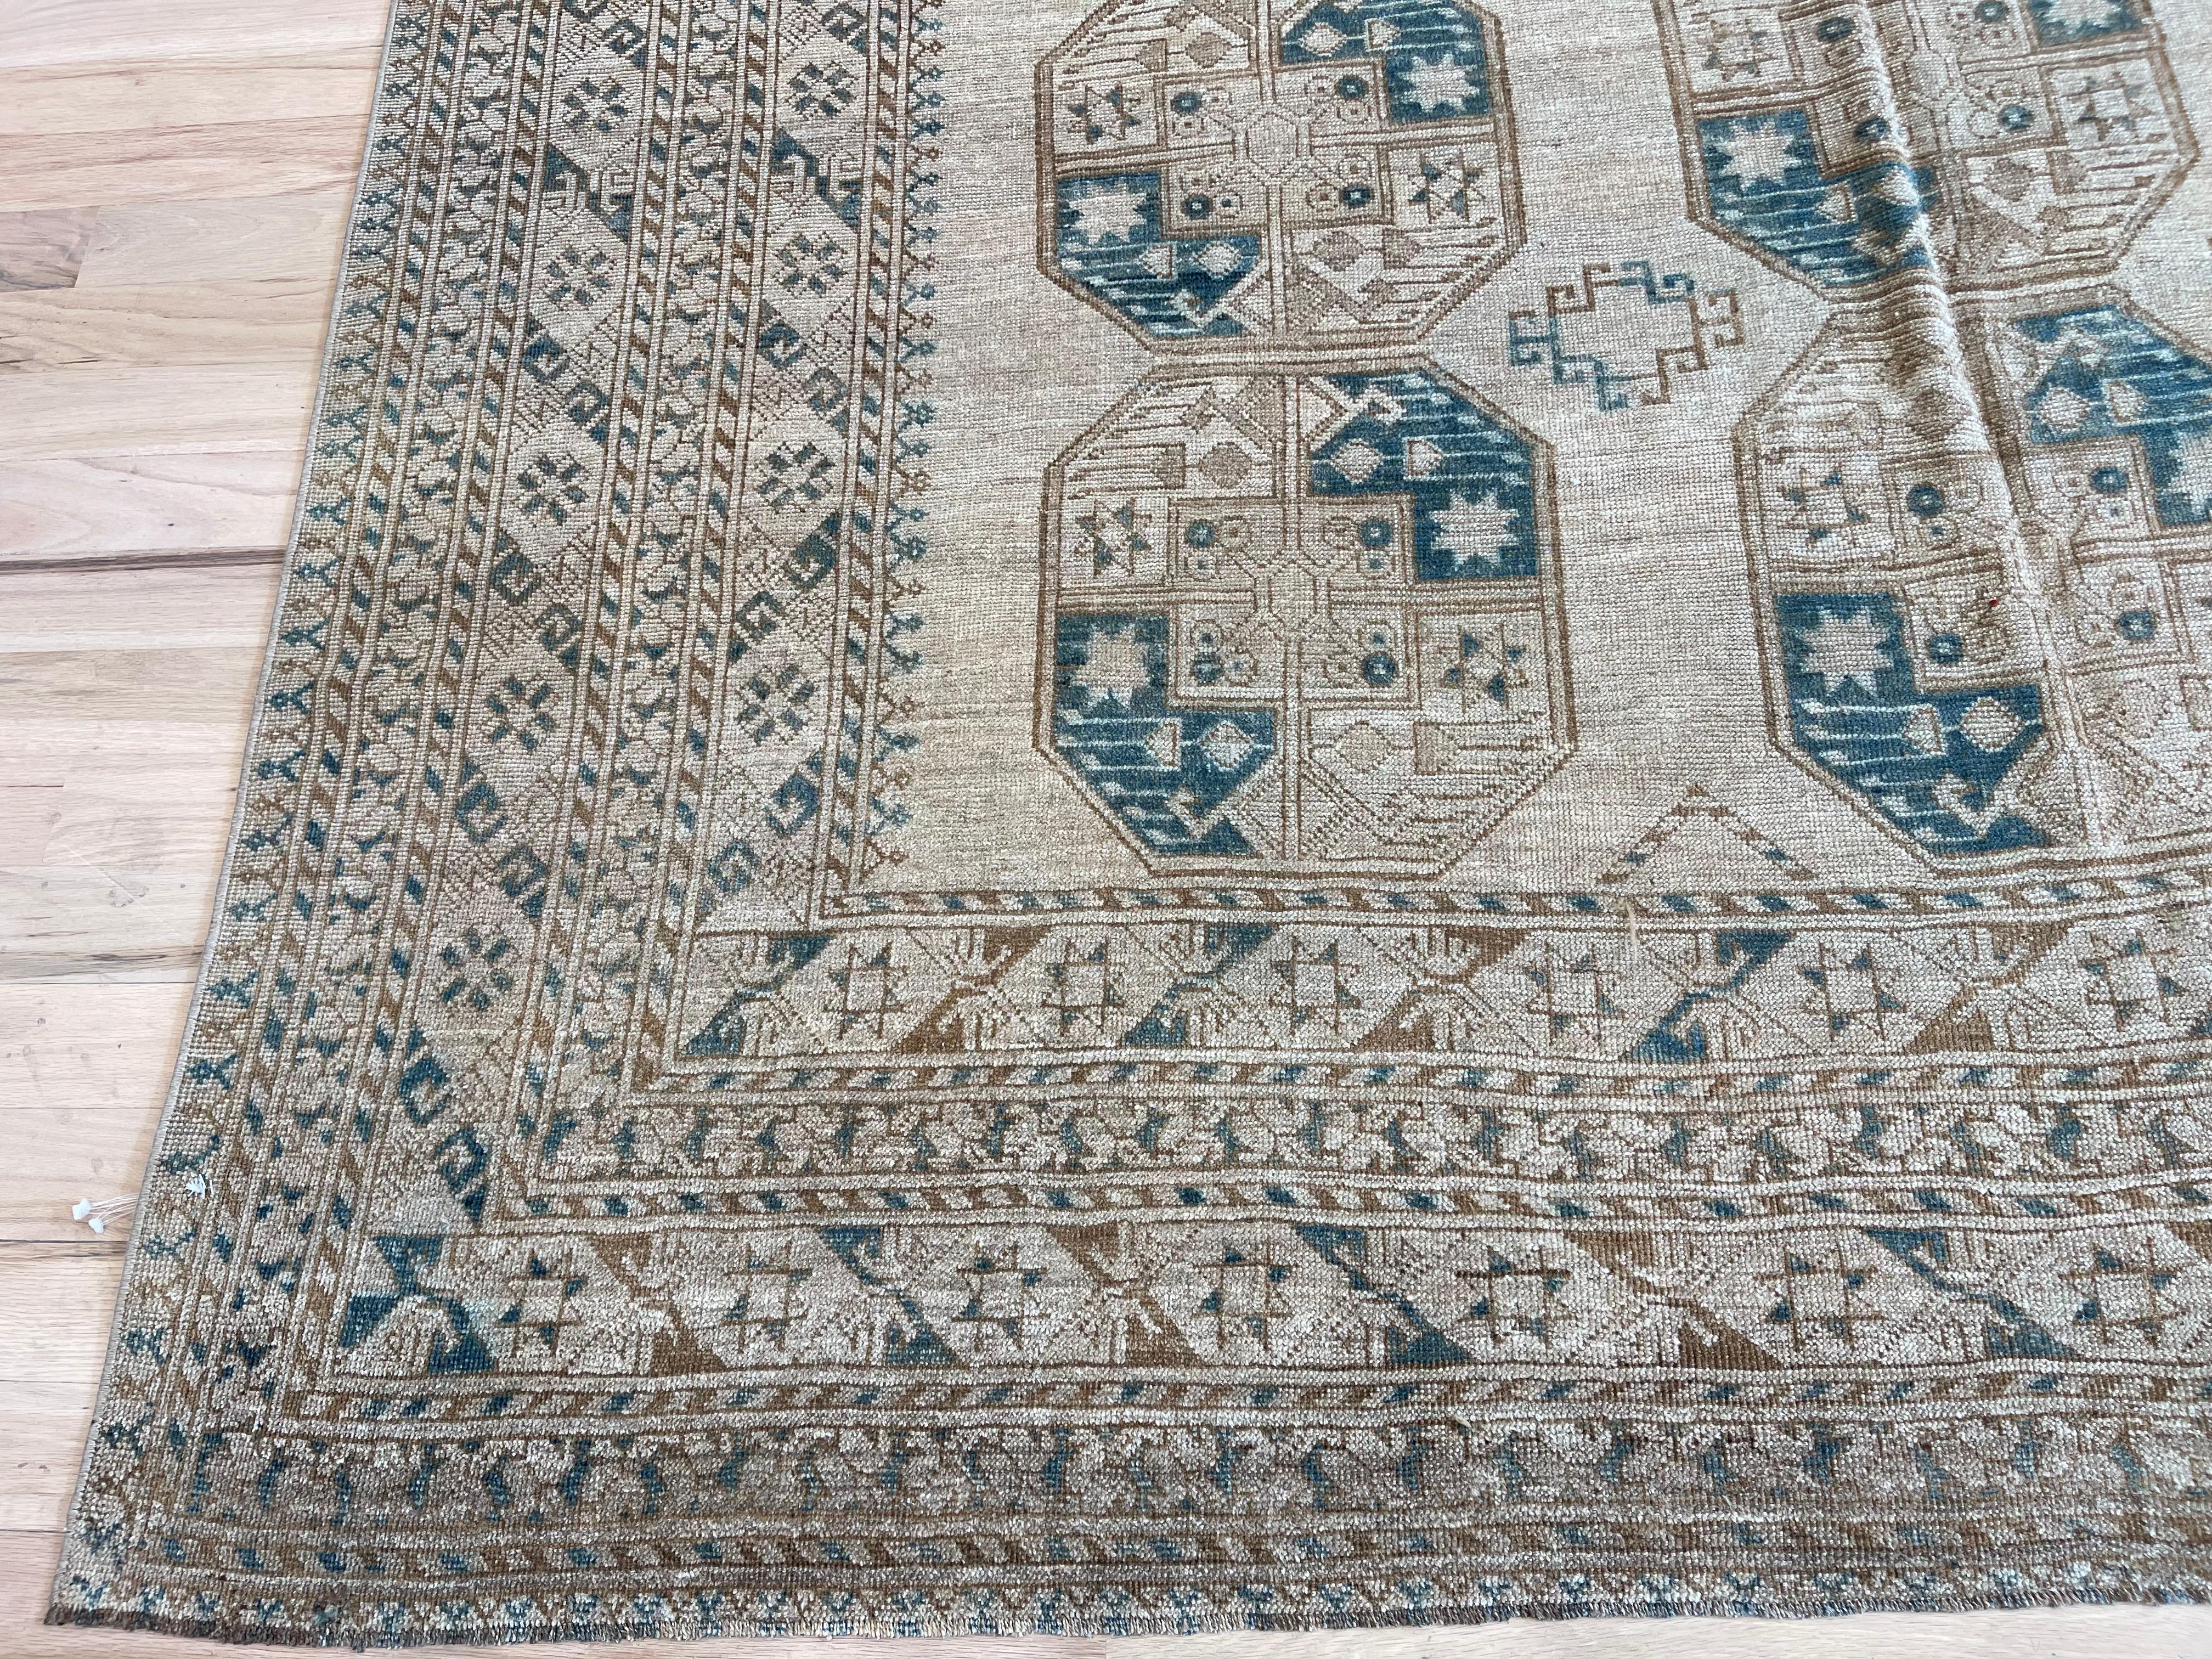 Vintage trifft auf Moderne mit diesem atemberaubenden türkischen Teppich. 
Der vollständig aus Wolle gefertigte Teppich mit seinen tiefen Blau- und Brauntönen bringt Wärme und Raffinesse in jeden Raum. 
Genießen Sie die zeitlose Eleganz und